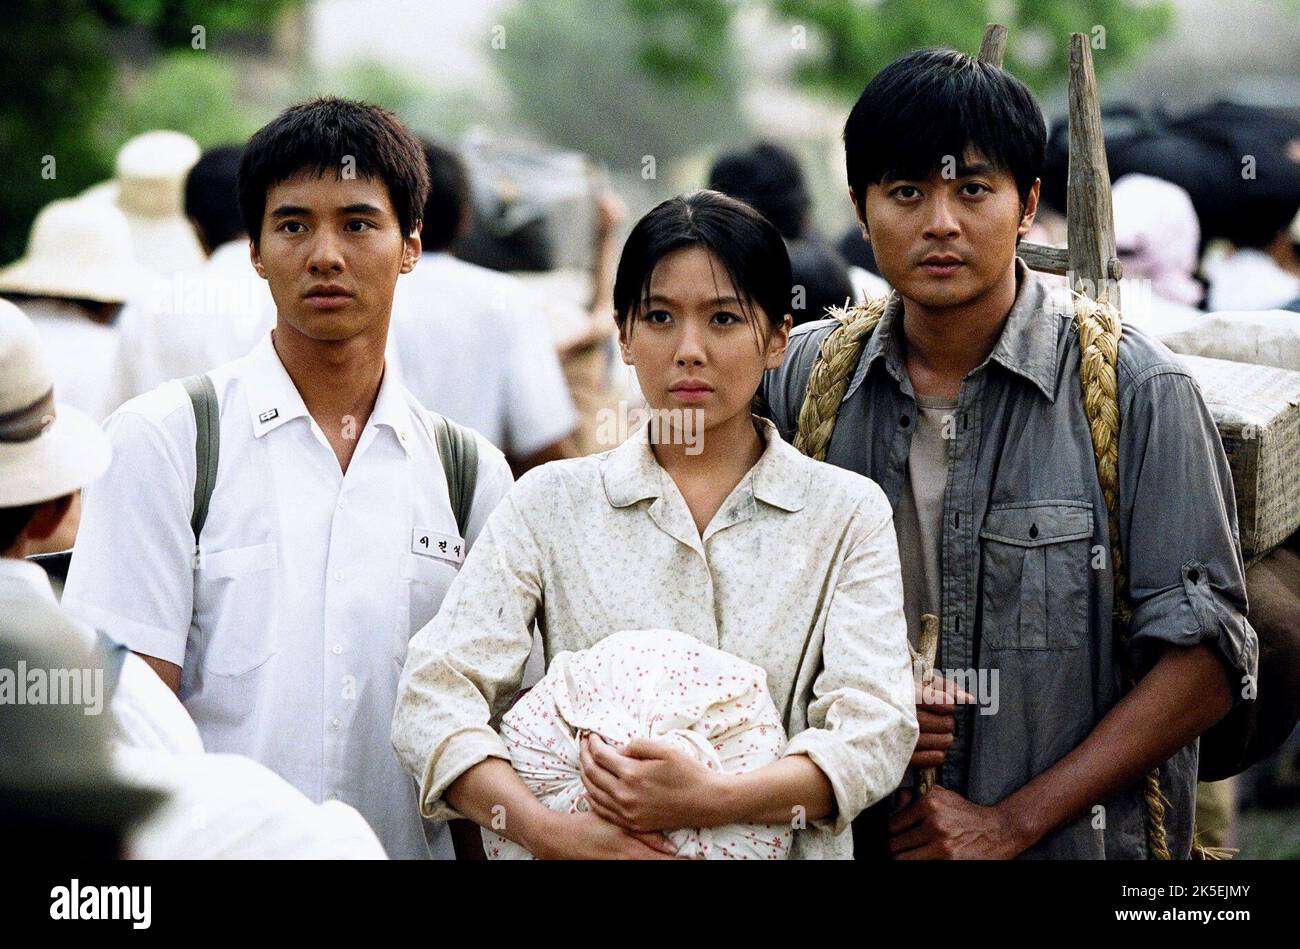 WON,LEE,JANG, TAE GUK GI: THE BROTHERHOOD OF WAR, 2004 Stock Photo